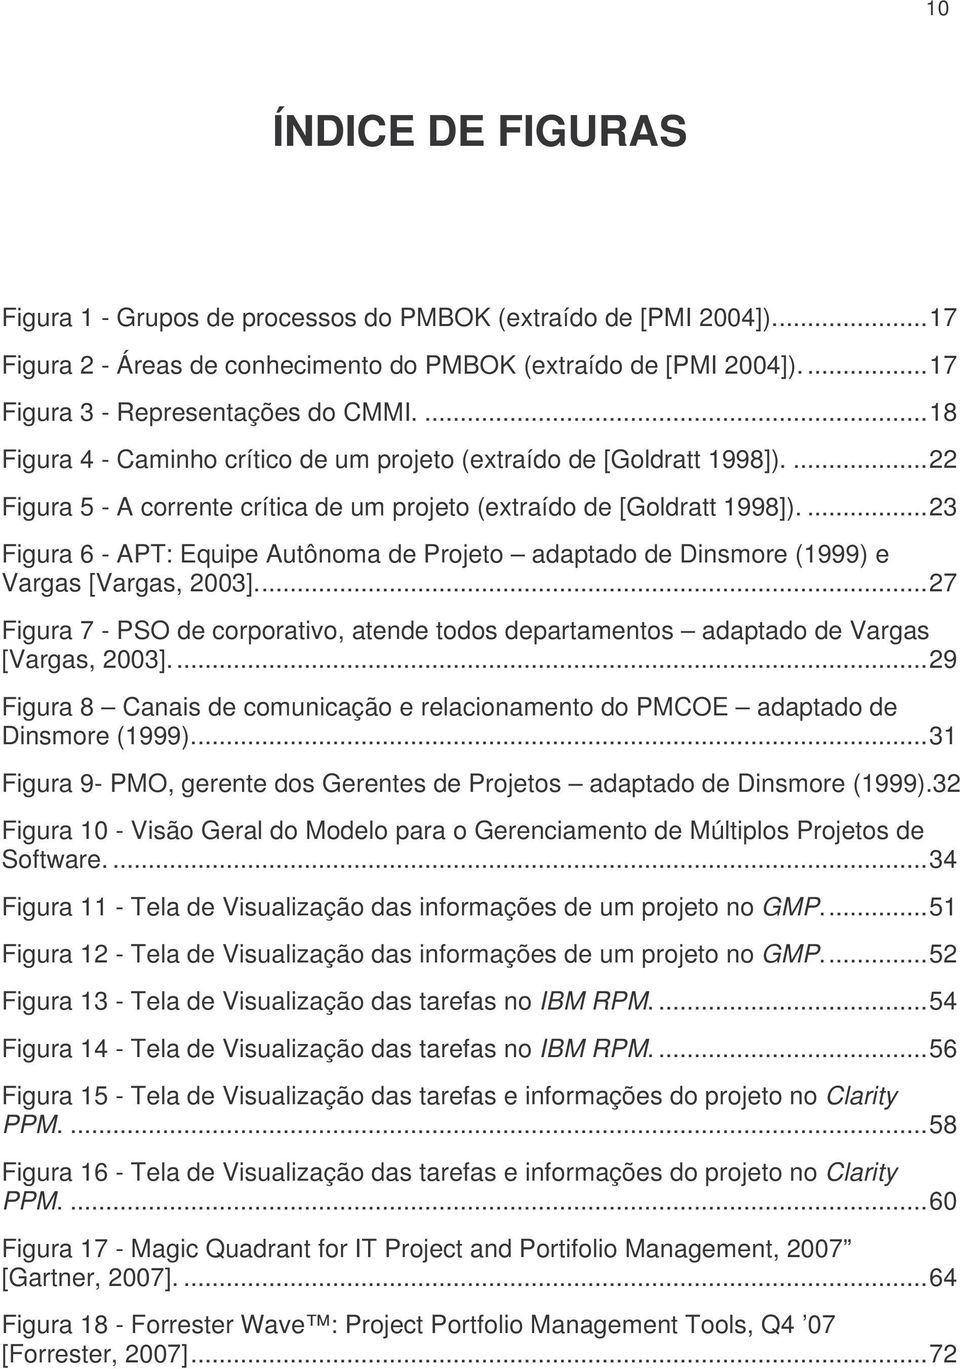 ... 23 Figura 6 - APT: Equipe Autônoma de Projeto adaptado de Dinsmore (1999) e Vargas [Vargas, 2003].... 27 Figura 7 - PSO de corporativo, atende todos departamentos adaptado de Vargas [Vargas, 2003].